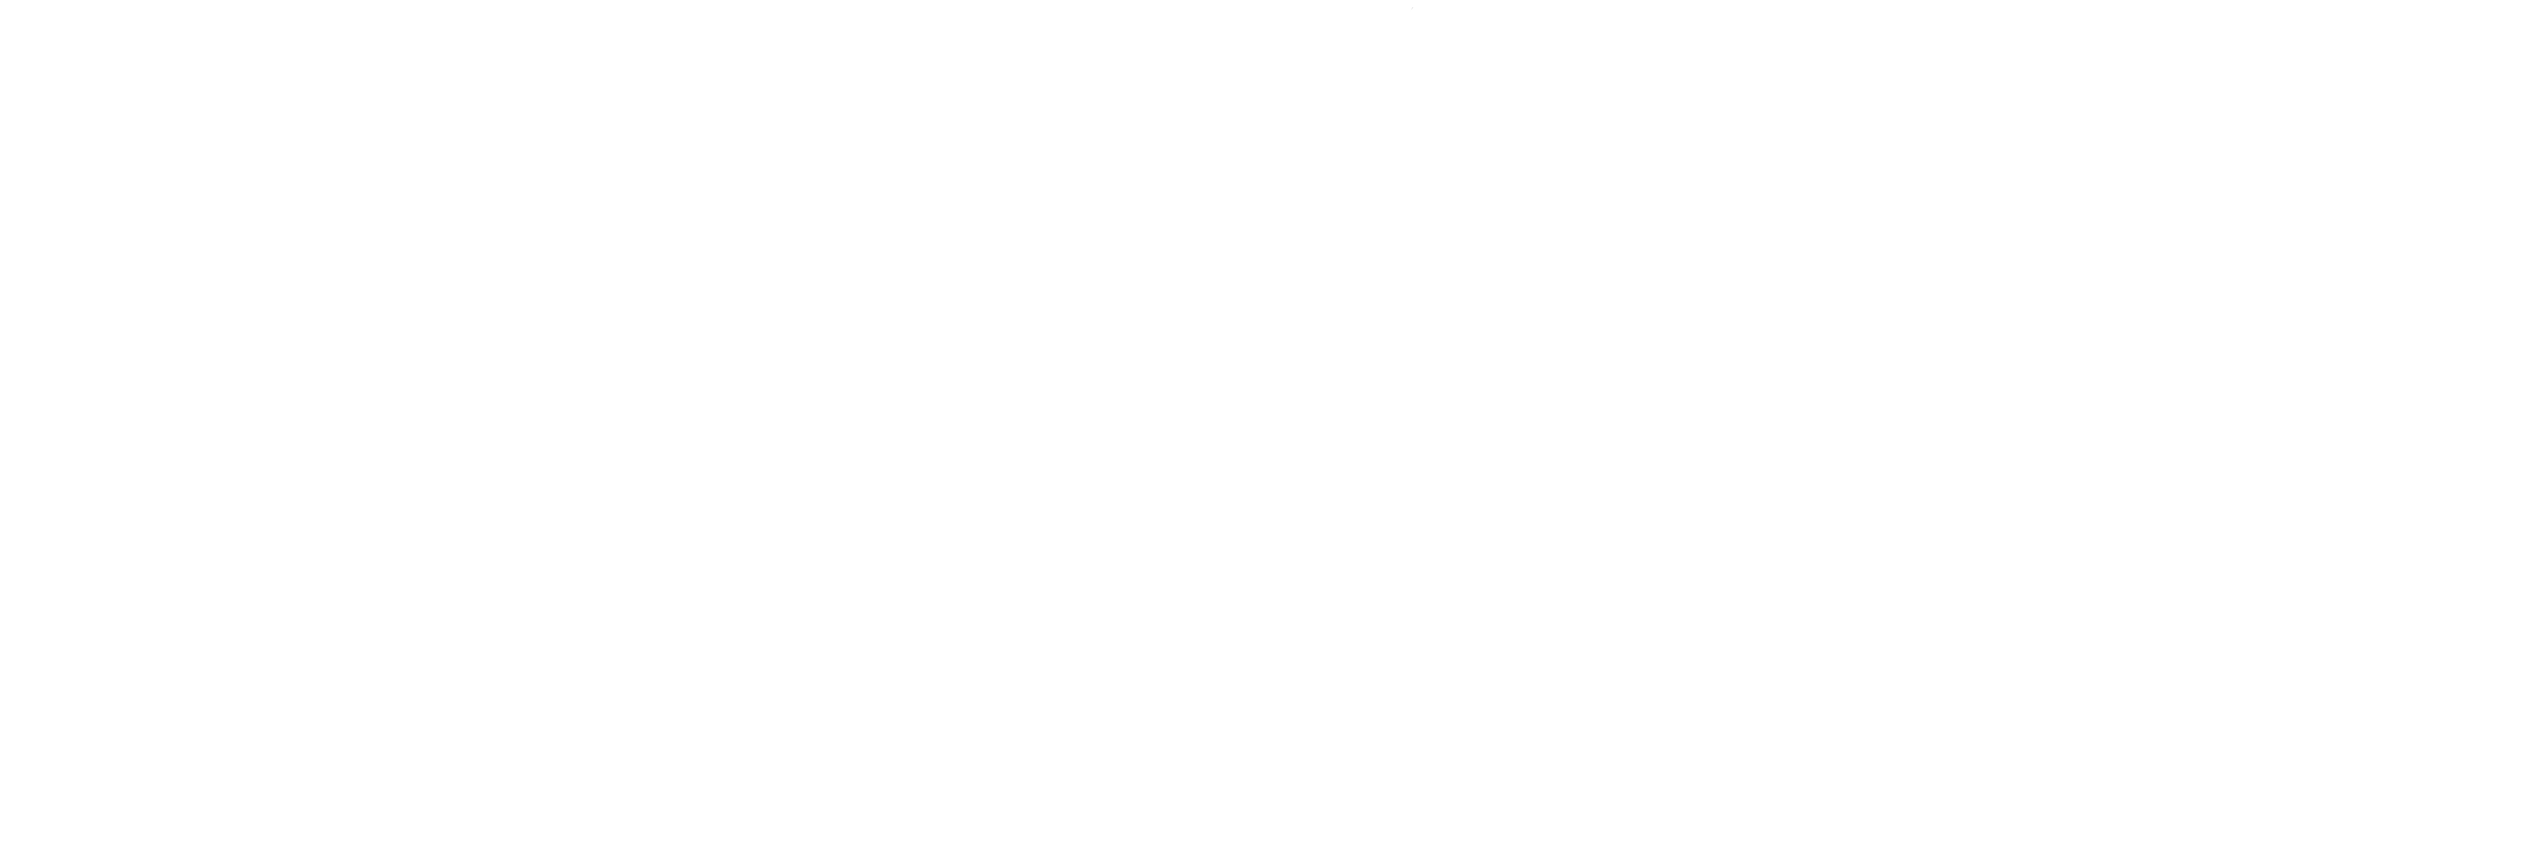 SIMPEL MIT THOMAS SAMPL – TV- & Spitzenkoch bei NDR Visite und Gründer sowie Inhaber der Hamburger Hobenköök: Markthalle, Restaurant und Catering in einem.